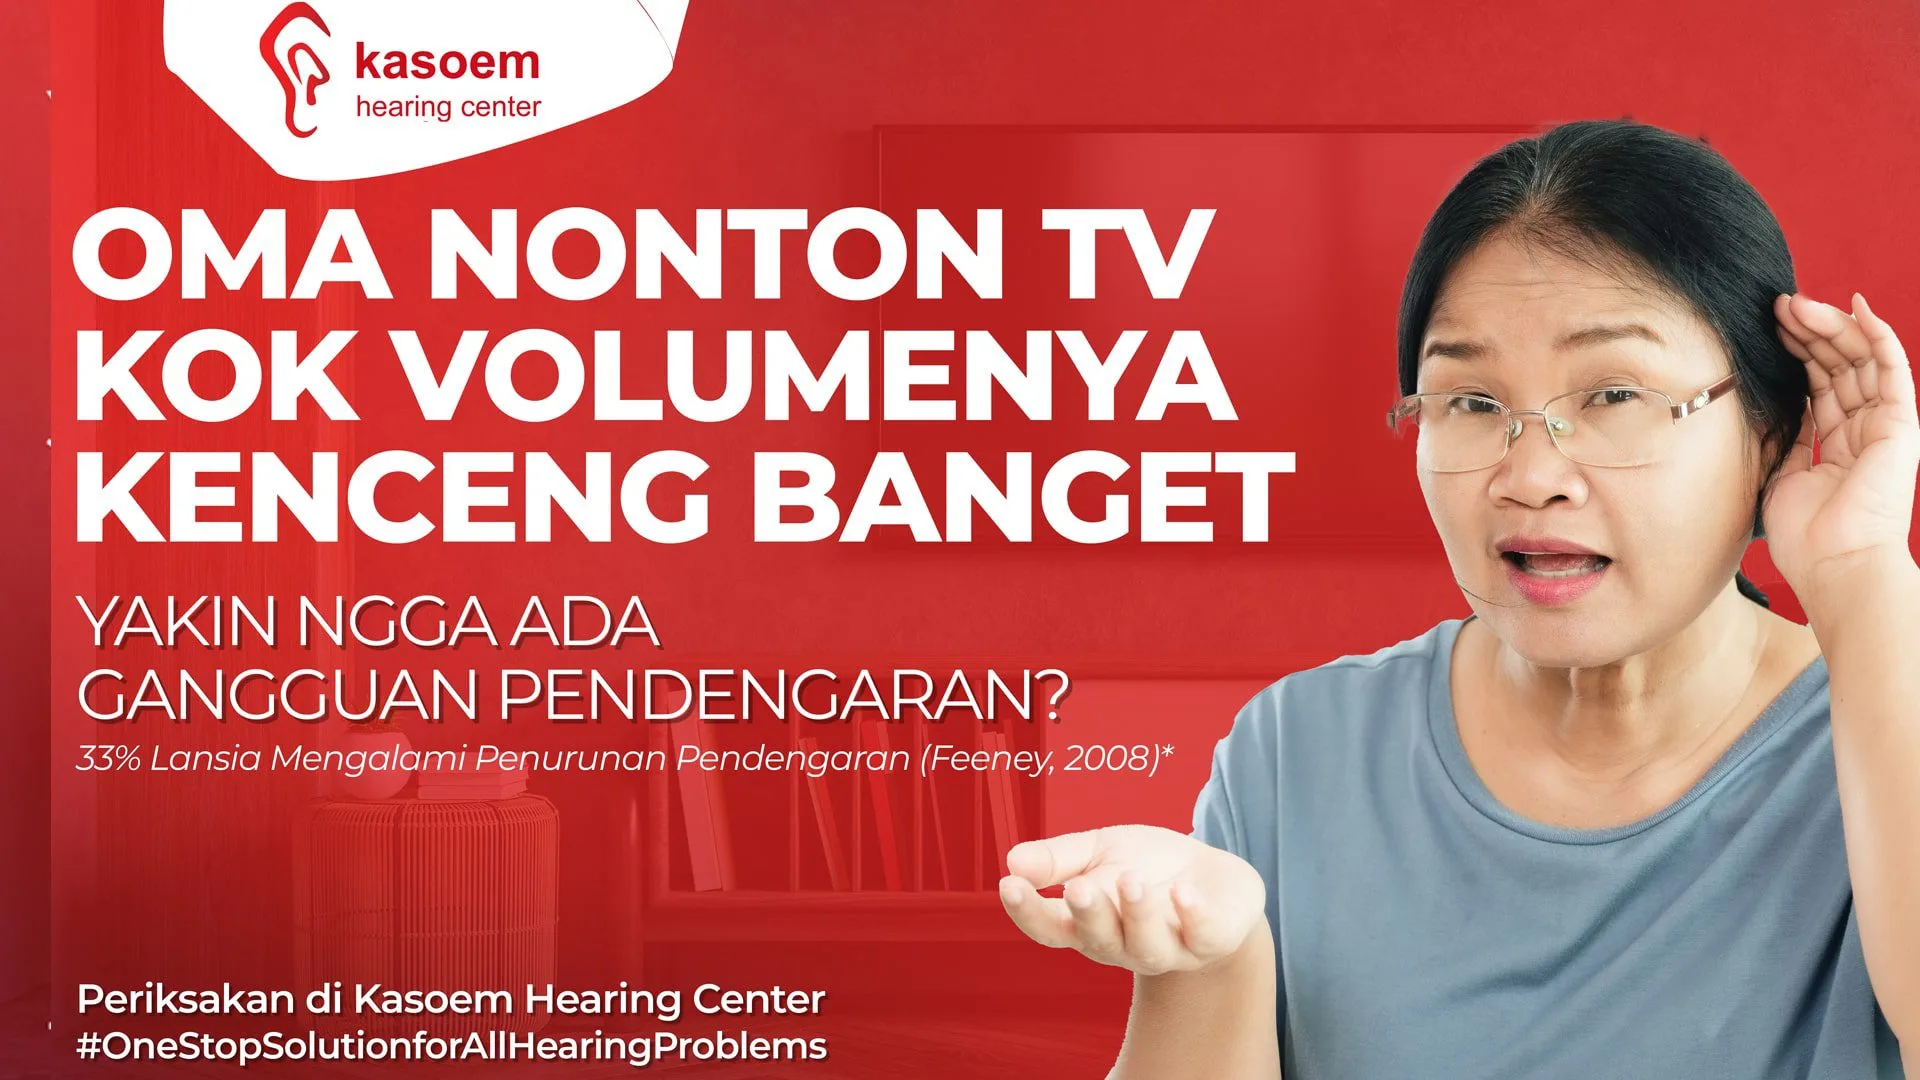 Oma Nonton TV Kok Volumenya Kenceng Banget